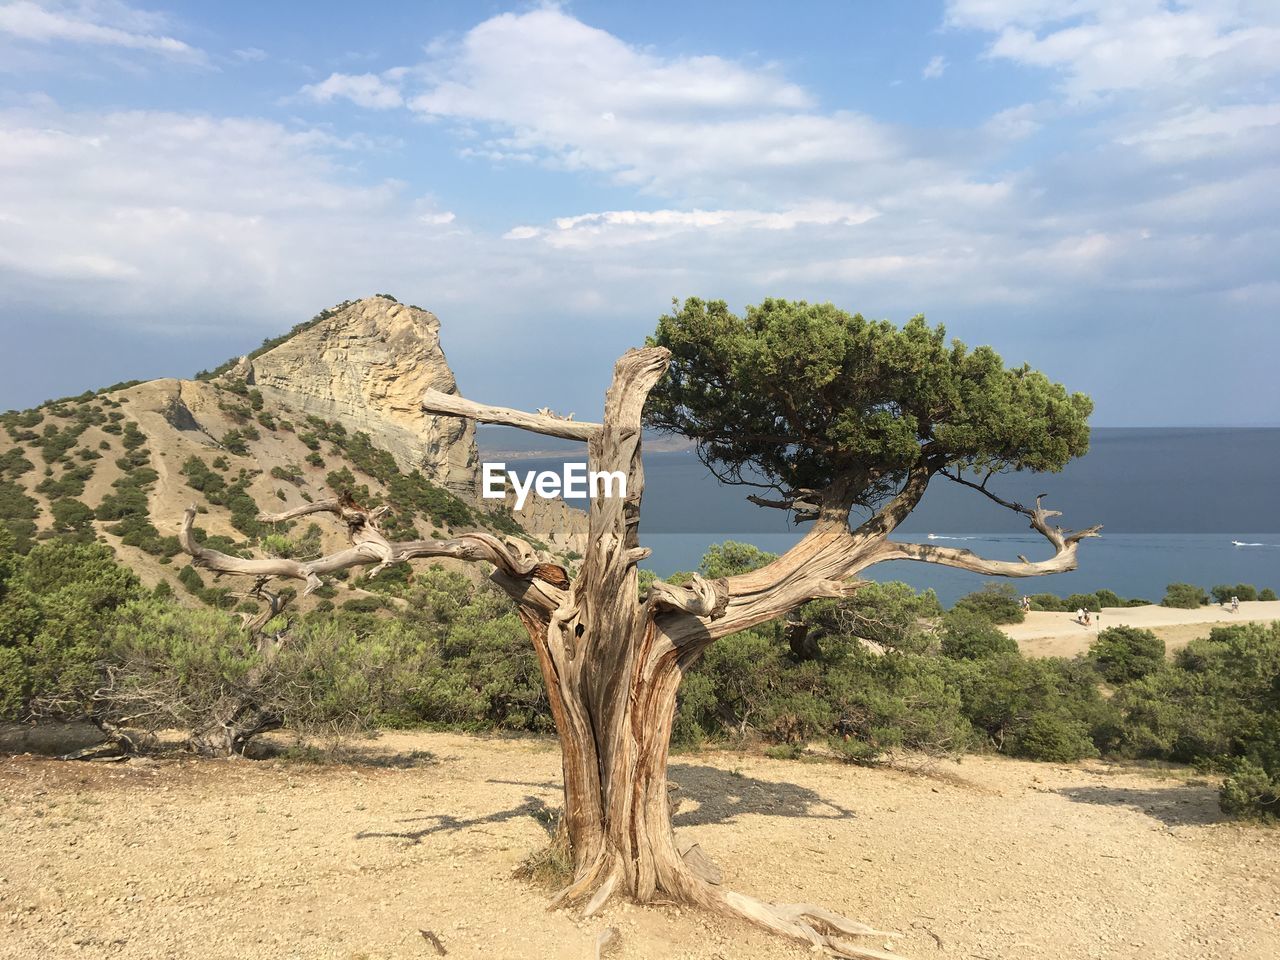 VIEW OF TREE ON DESERT AGAINST SKY